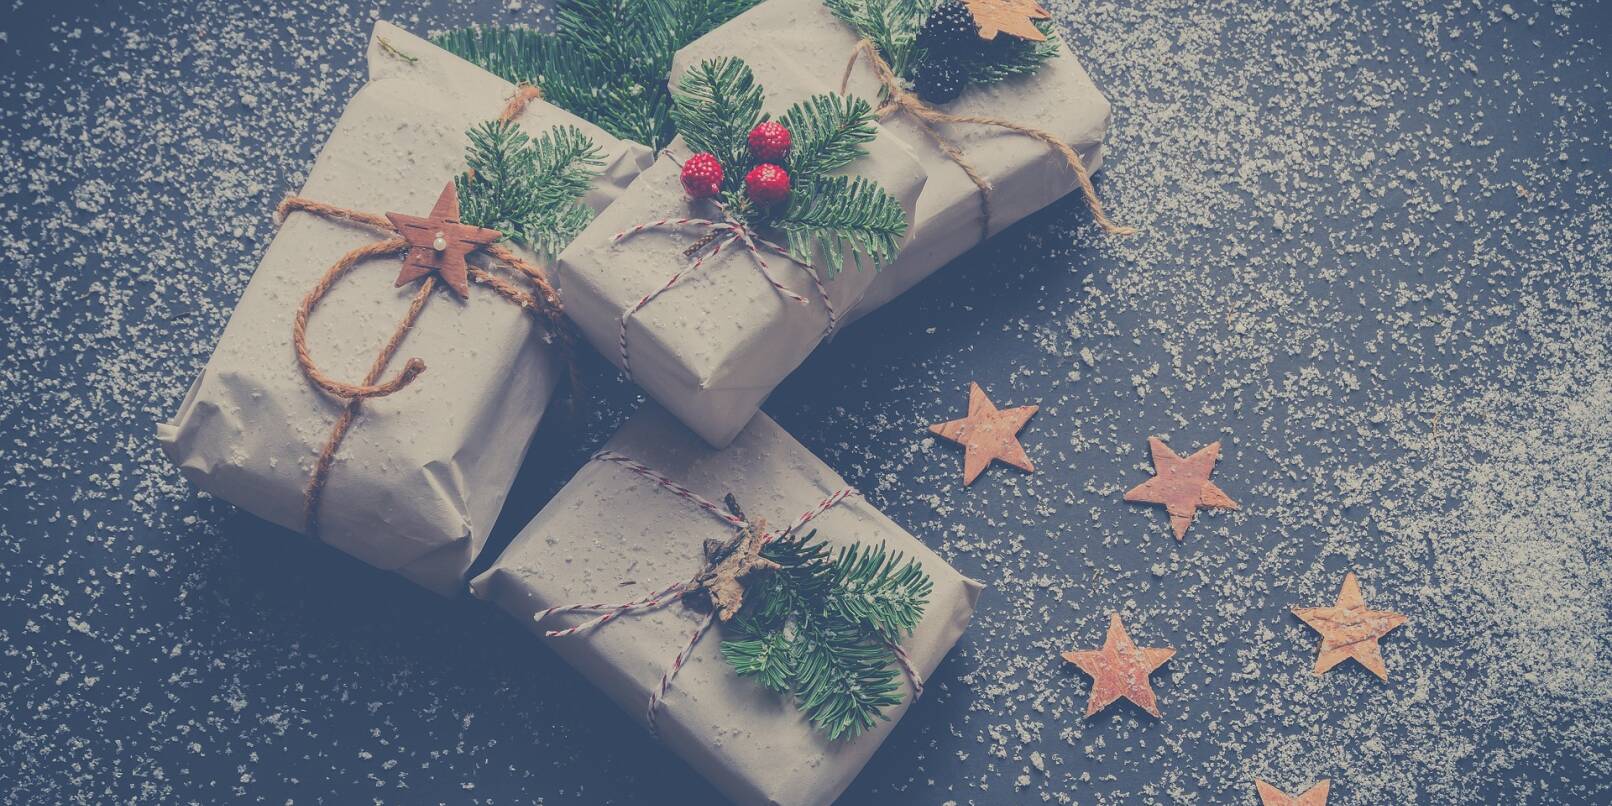 Hübsch verpackte Weihnachtsgeschenke: Familie und Freunde freuen sich besonders über Selbstgemachtes.